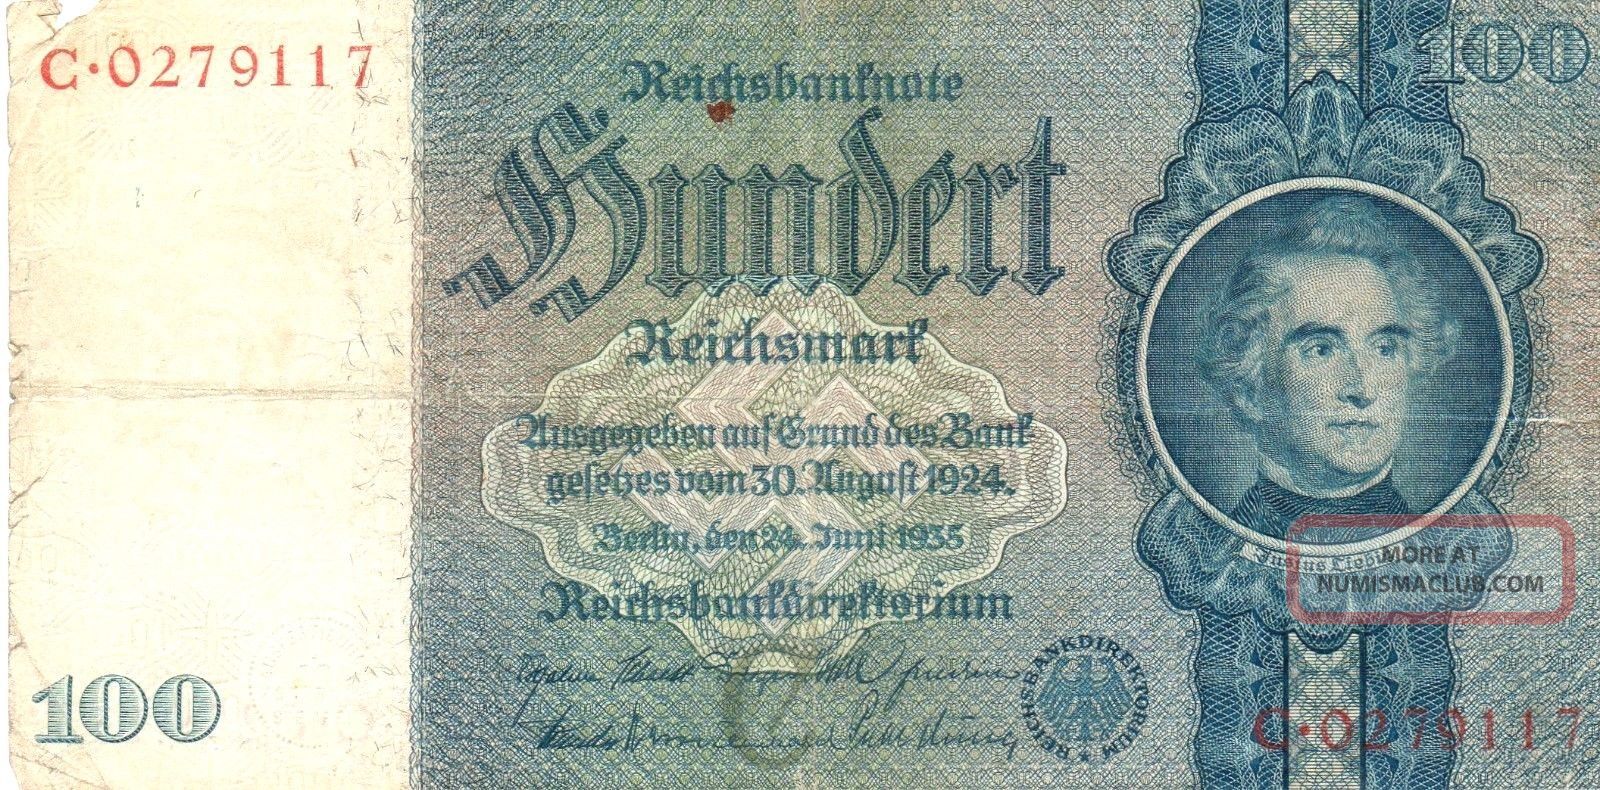 Xxx - Rare German 100 Reichsmark Third Reich Nazi Banknote From 1935 Europe photo